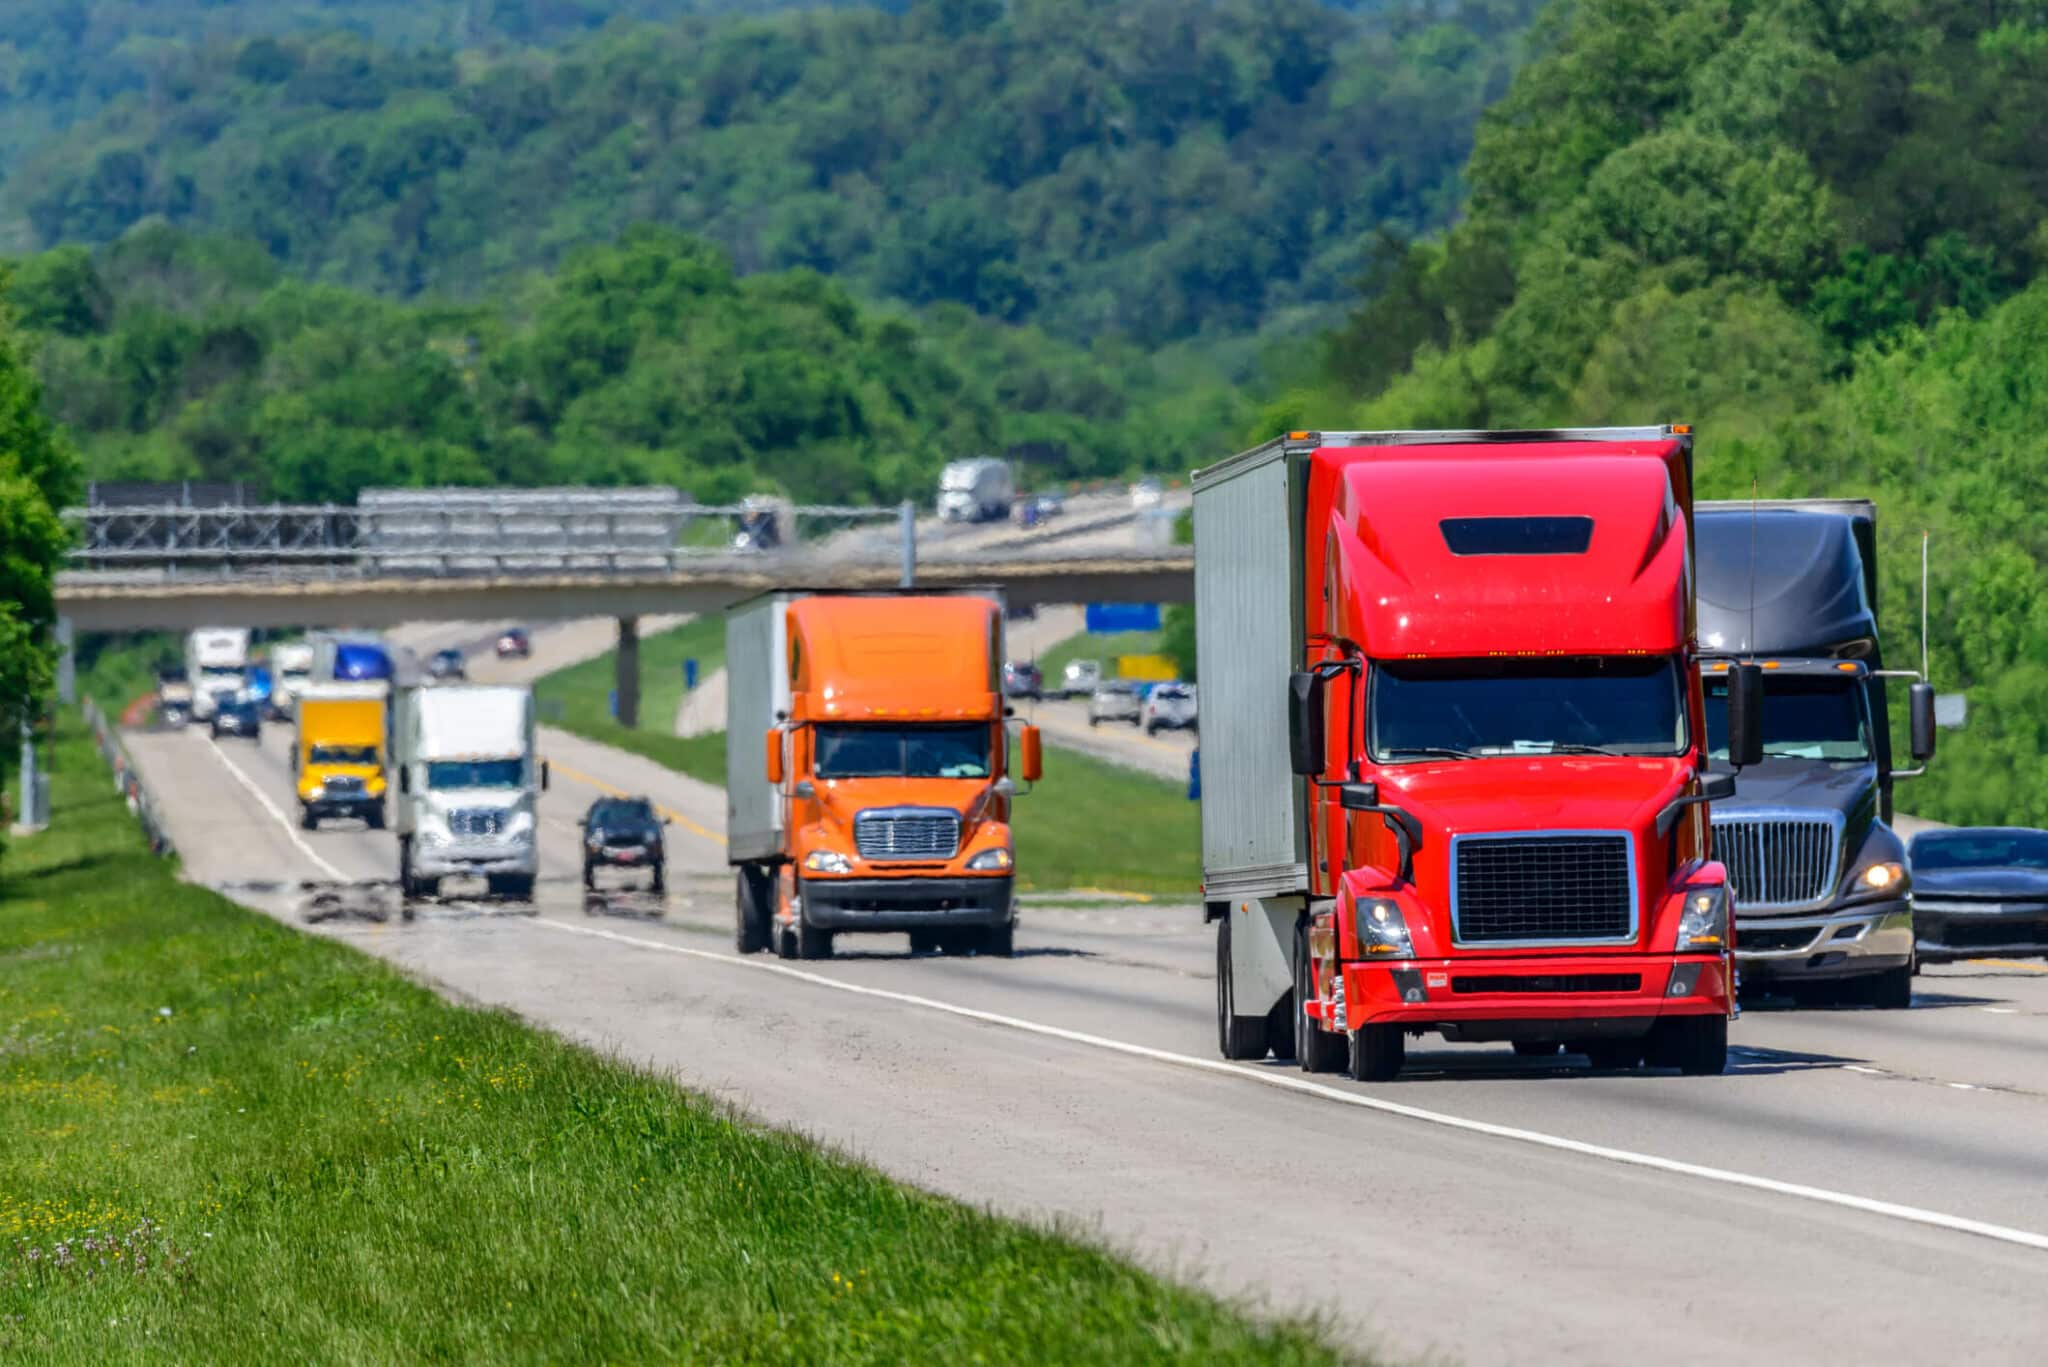 Fleet of trucks on the highway